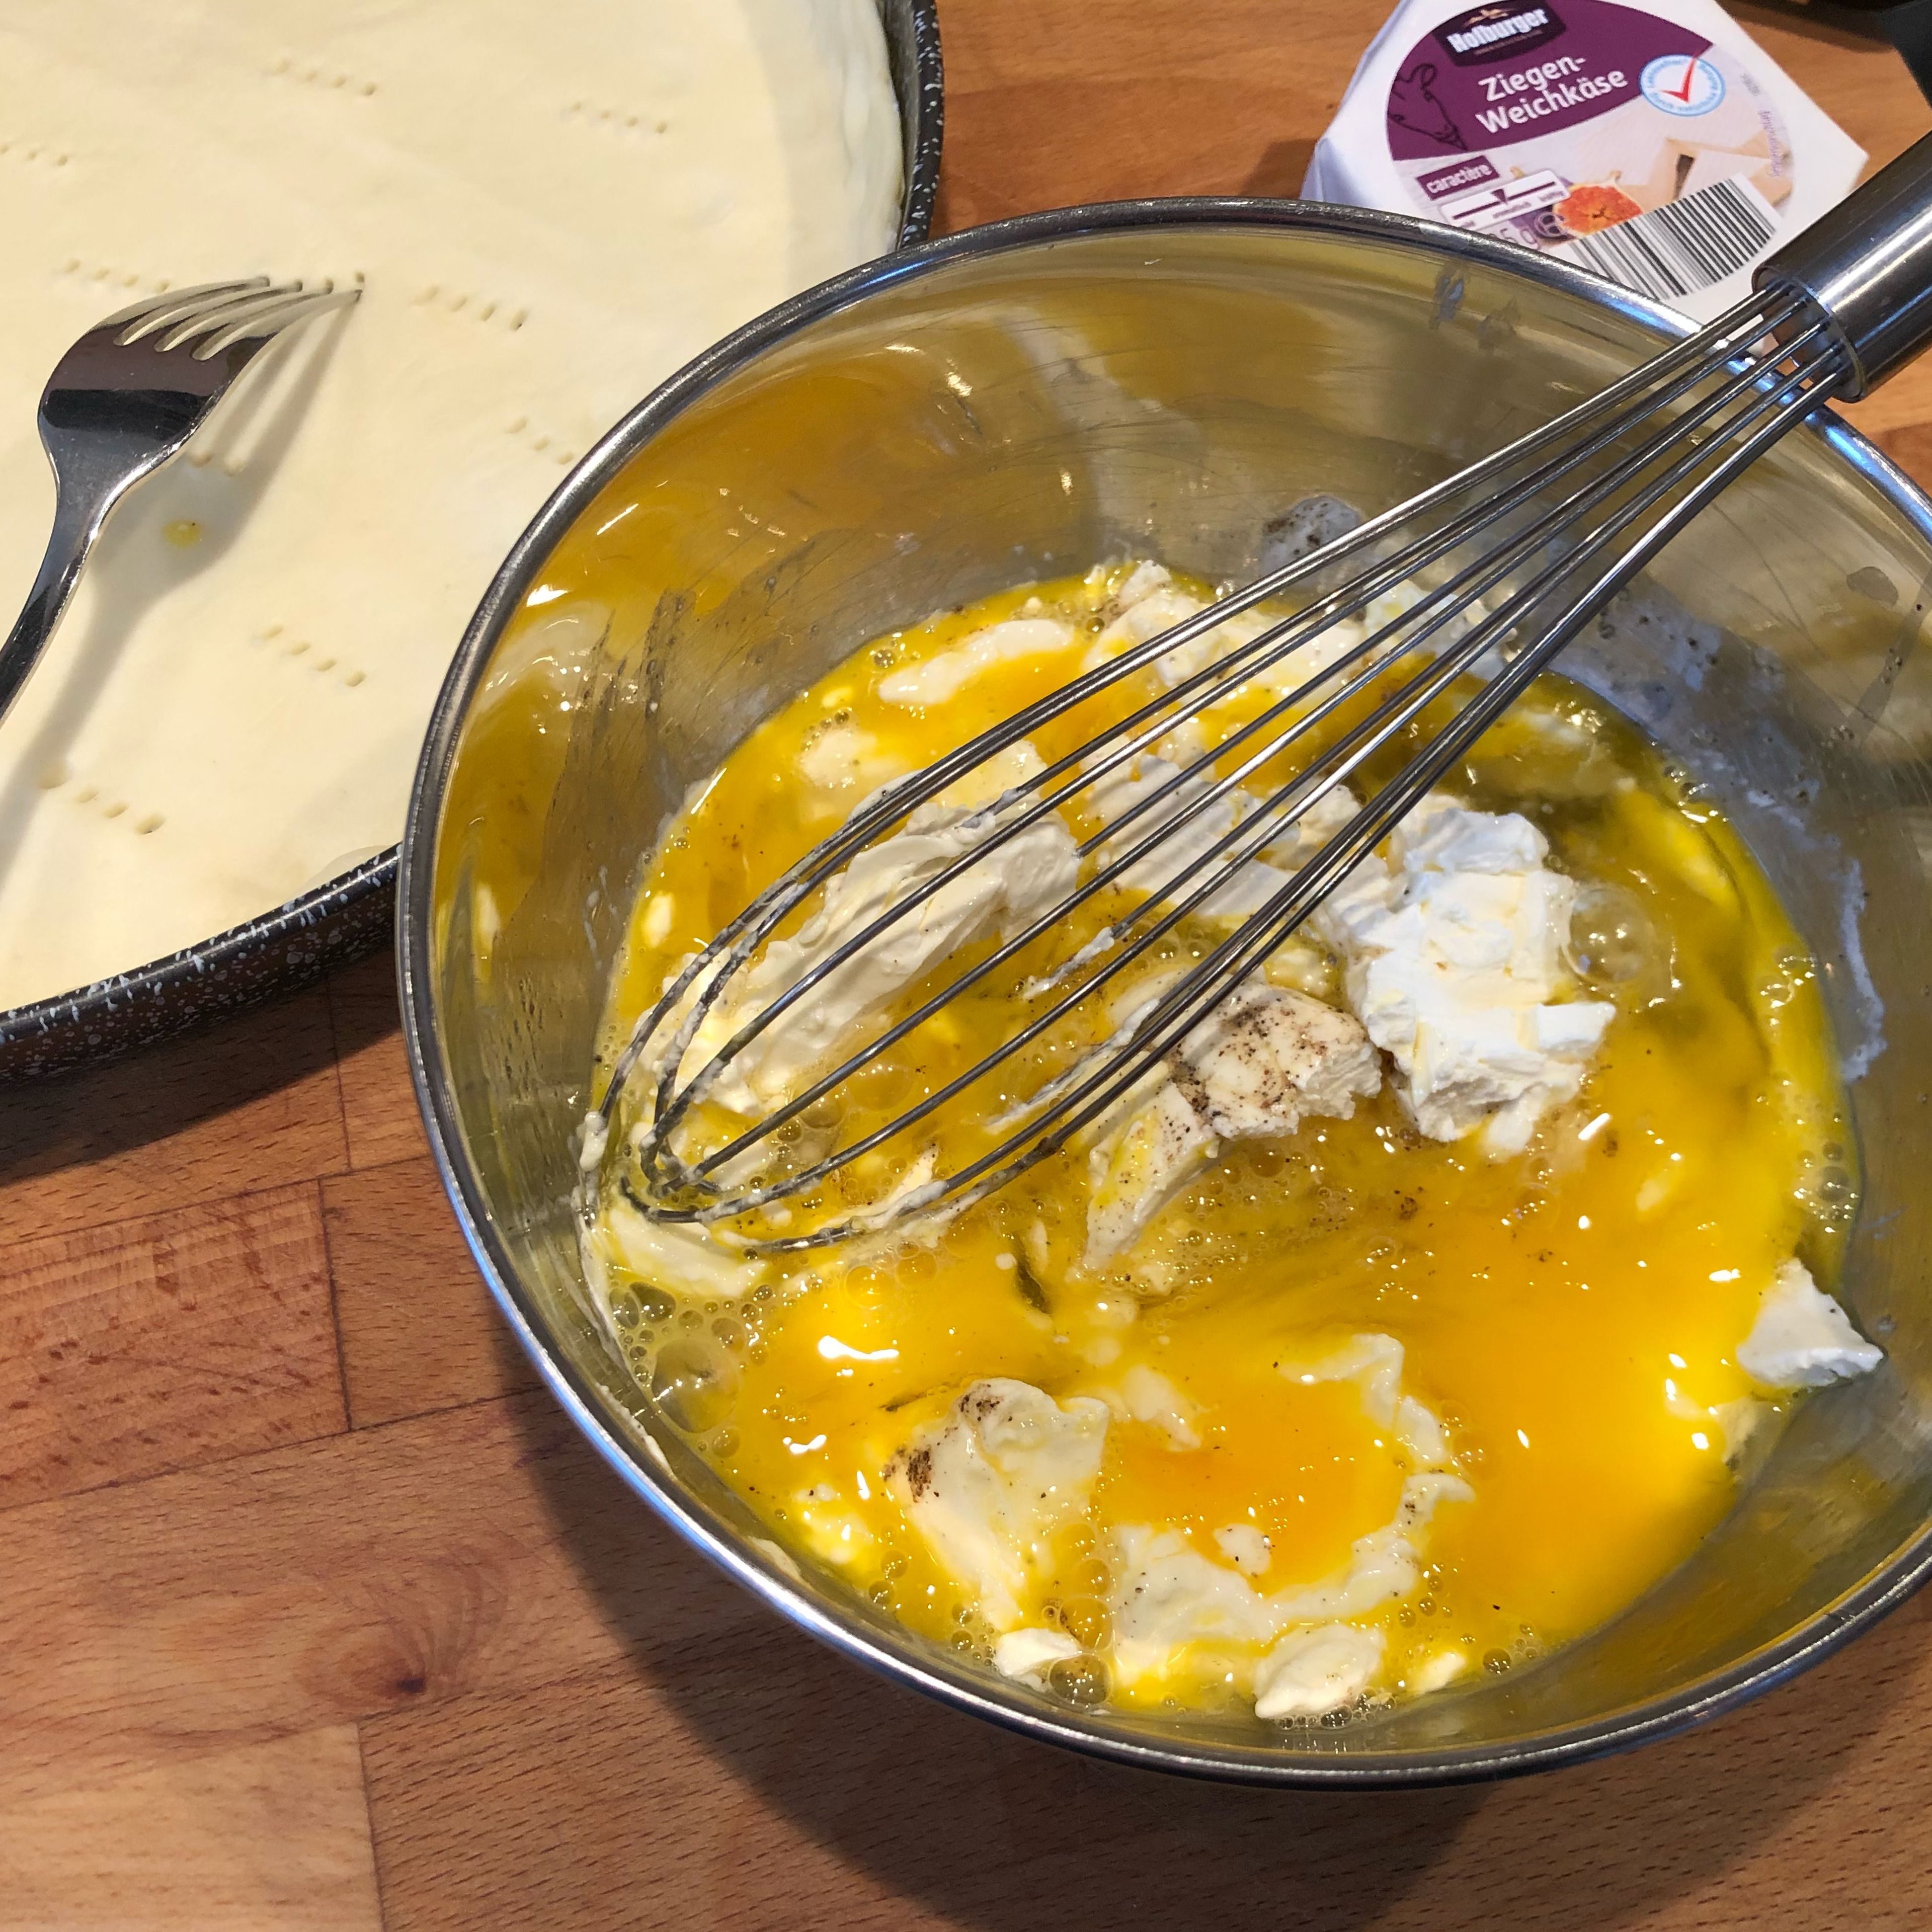 Eier und Mascarpone in einer Schüssel vermengen, mit 1 TL Salz und Pfeffer leicht würzen. Ziegenkäse in Stücke oder Scheiben schneiden, je nach Form des Käses. Wer es kräftig mag, kann auch einen reiferen Ziegenkäse wählen. Wenn der Cookit fertig ist, den Rotkohl in ein Sieb geben und kurz abkühlen lassen. Backofen auf 180°C Ober-/Unterhitze oder 170°C Heißluftkombihitze vorheizen.